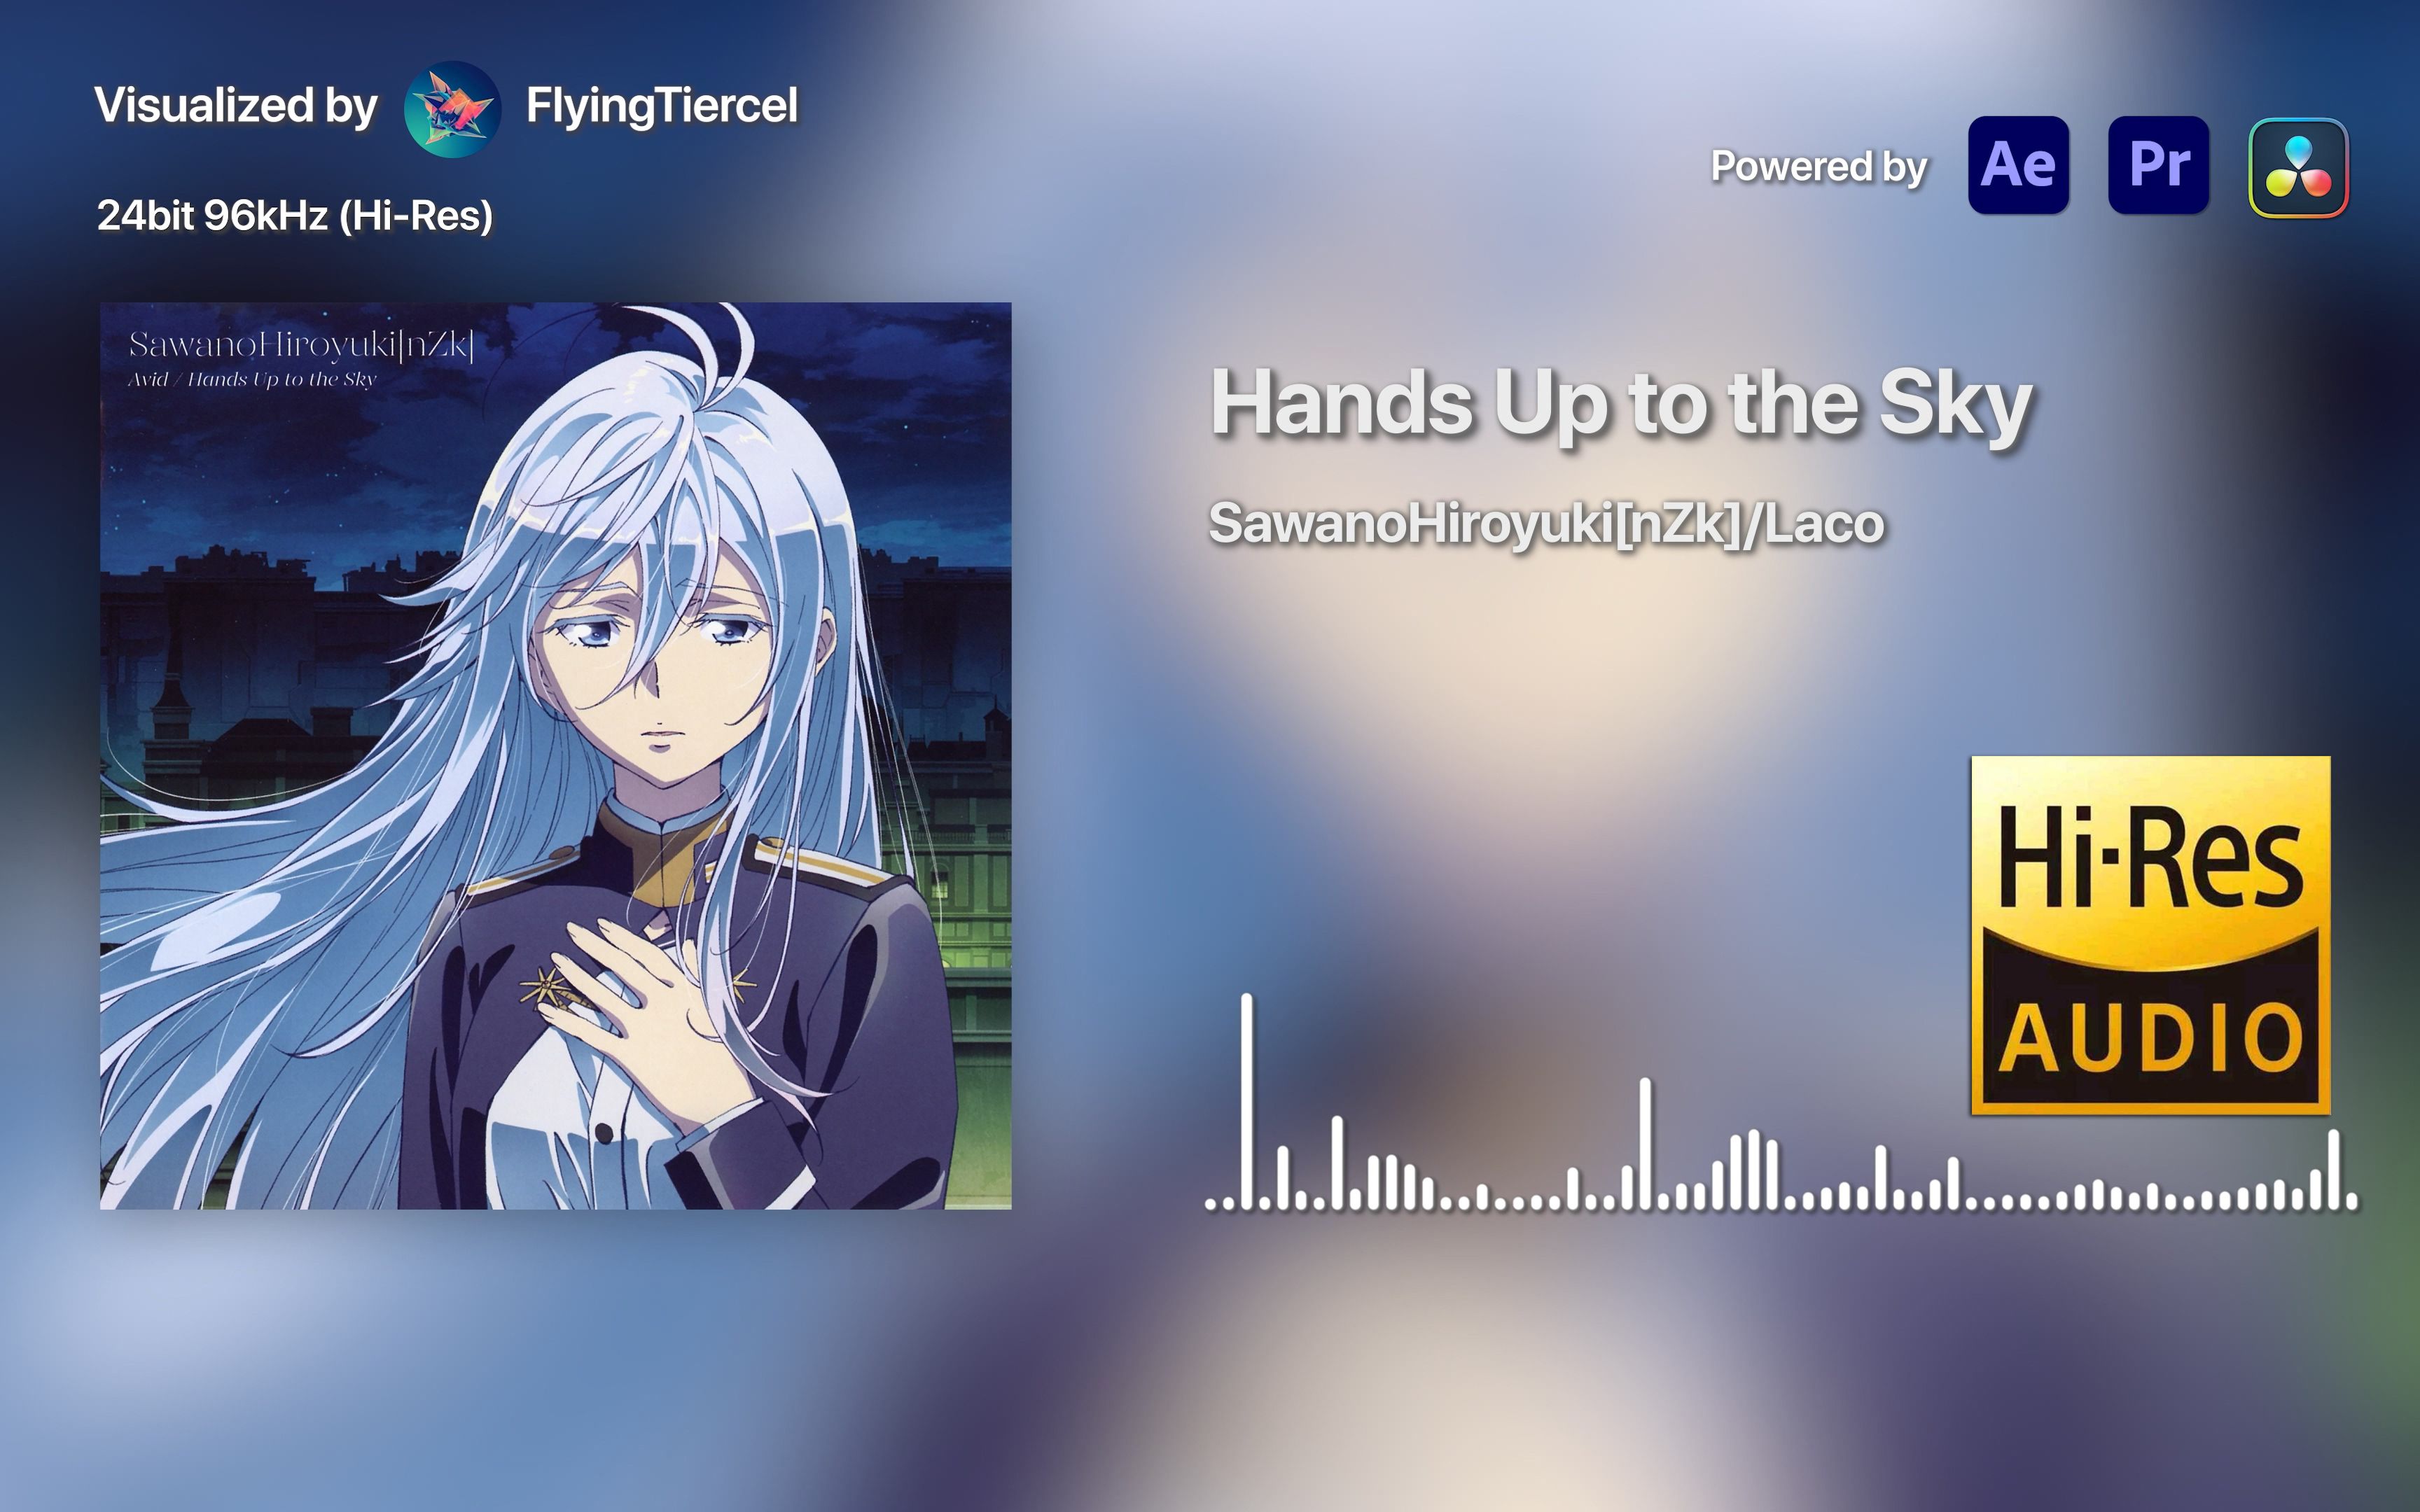 [4K Hi-Res] Hands Up to the Sky-泽野弘之/Laco [24bit/96kHz] 音频可视化